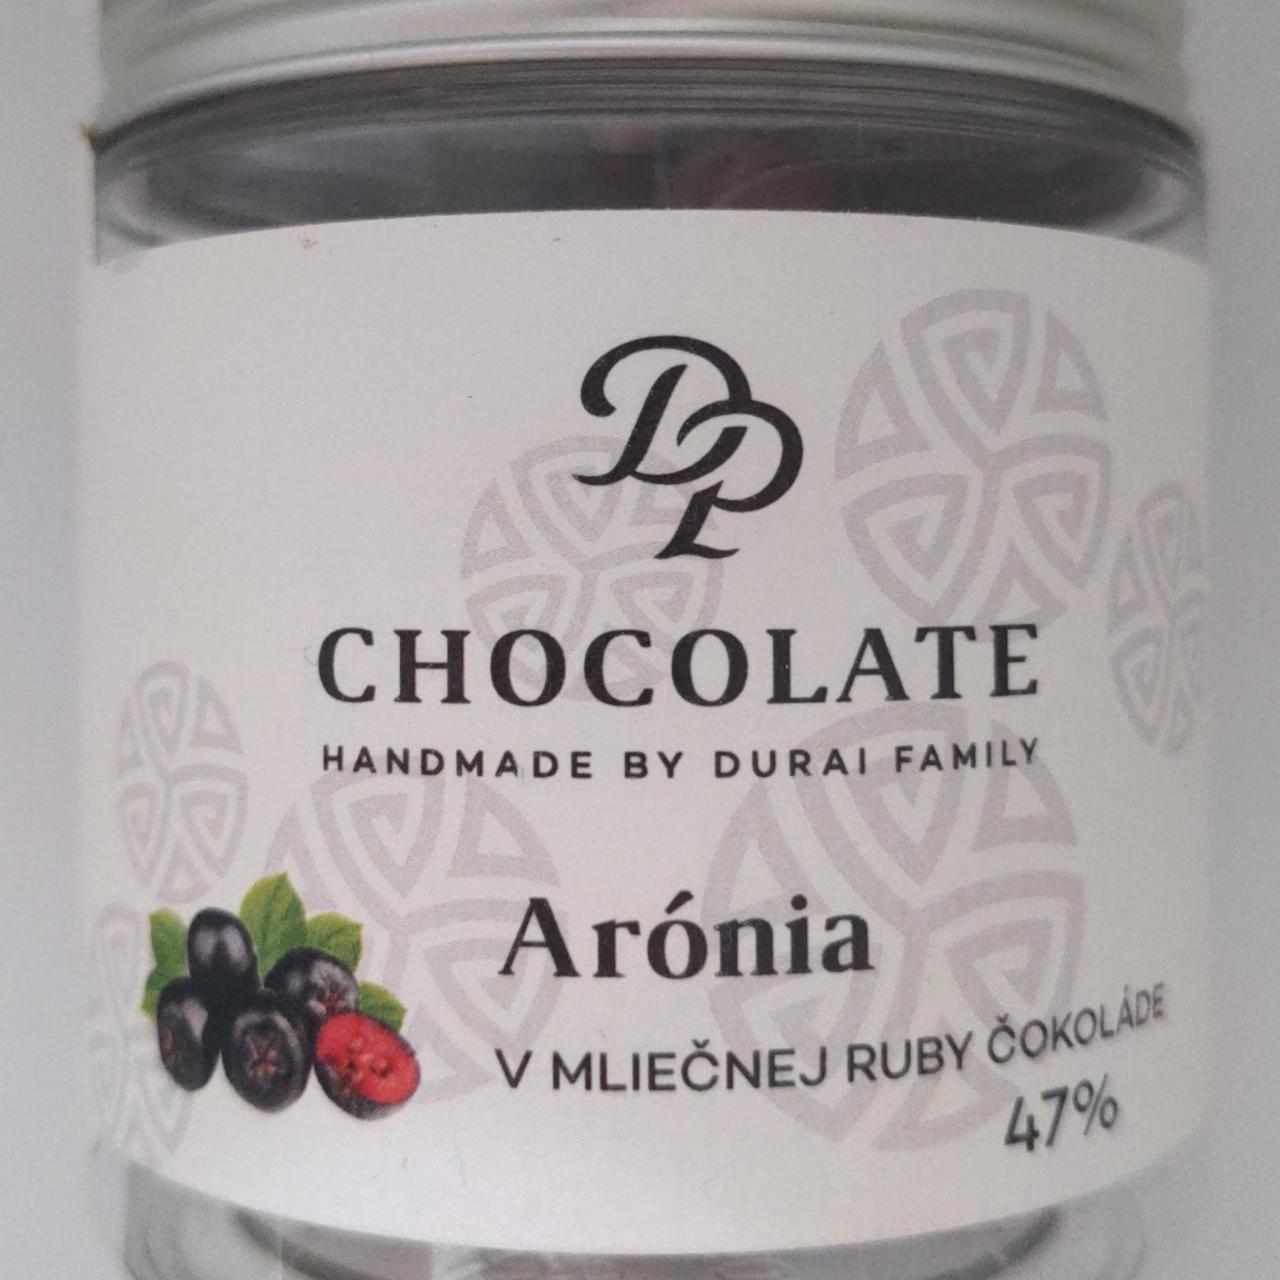 Fotografie - Arónia v mliečnej ruby čokoláde 47% Durai family